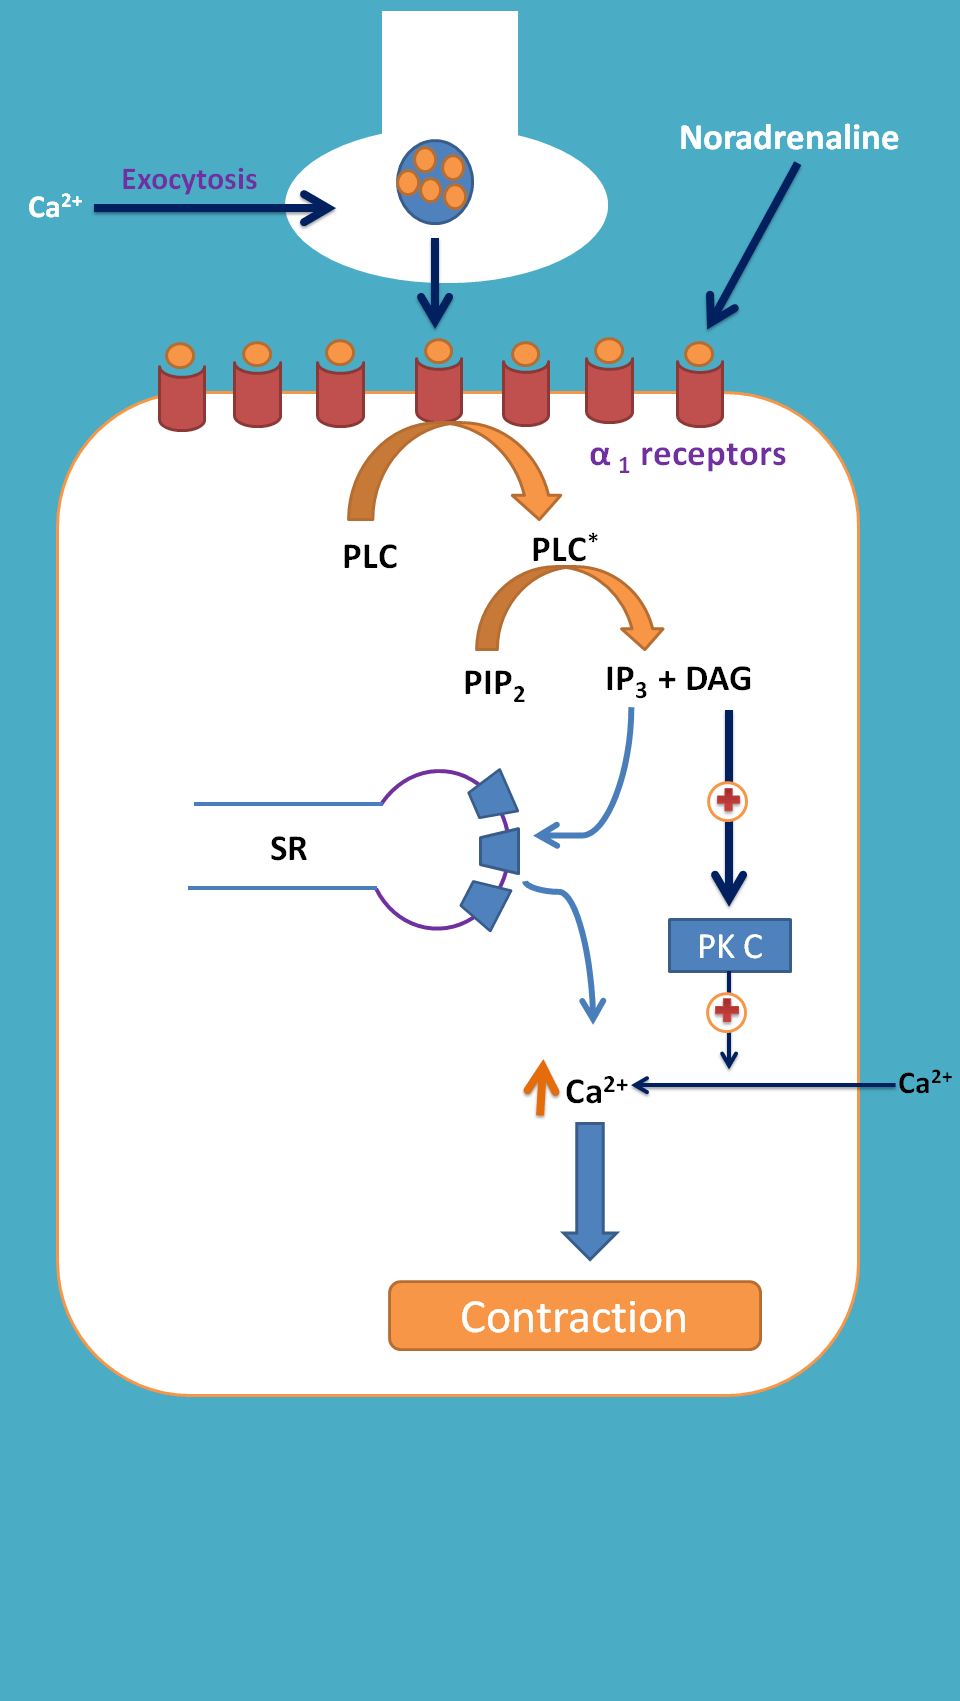 contraction by alpha1 receptors